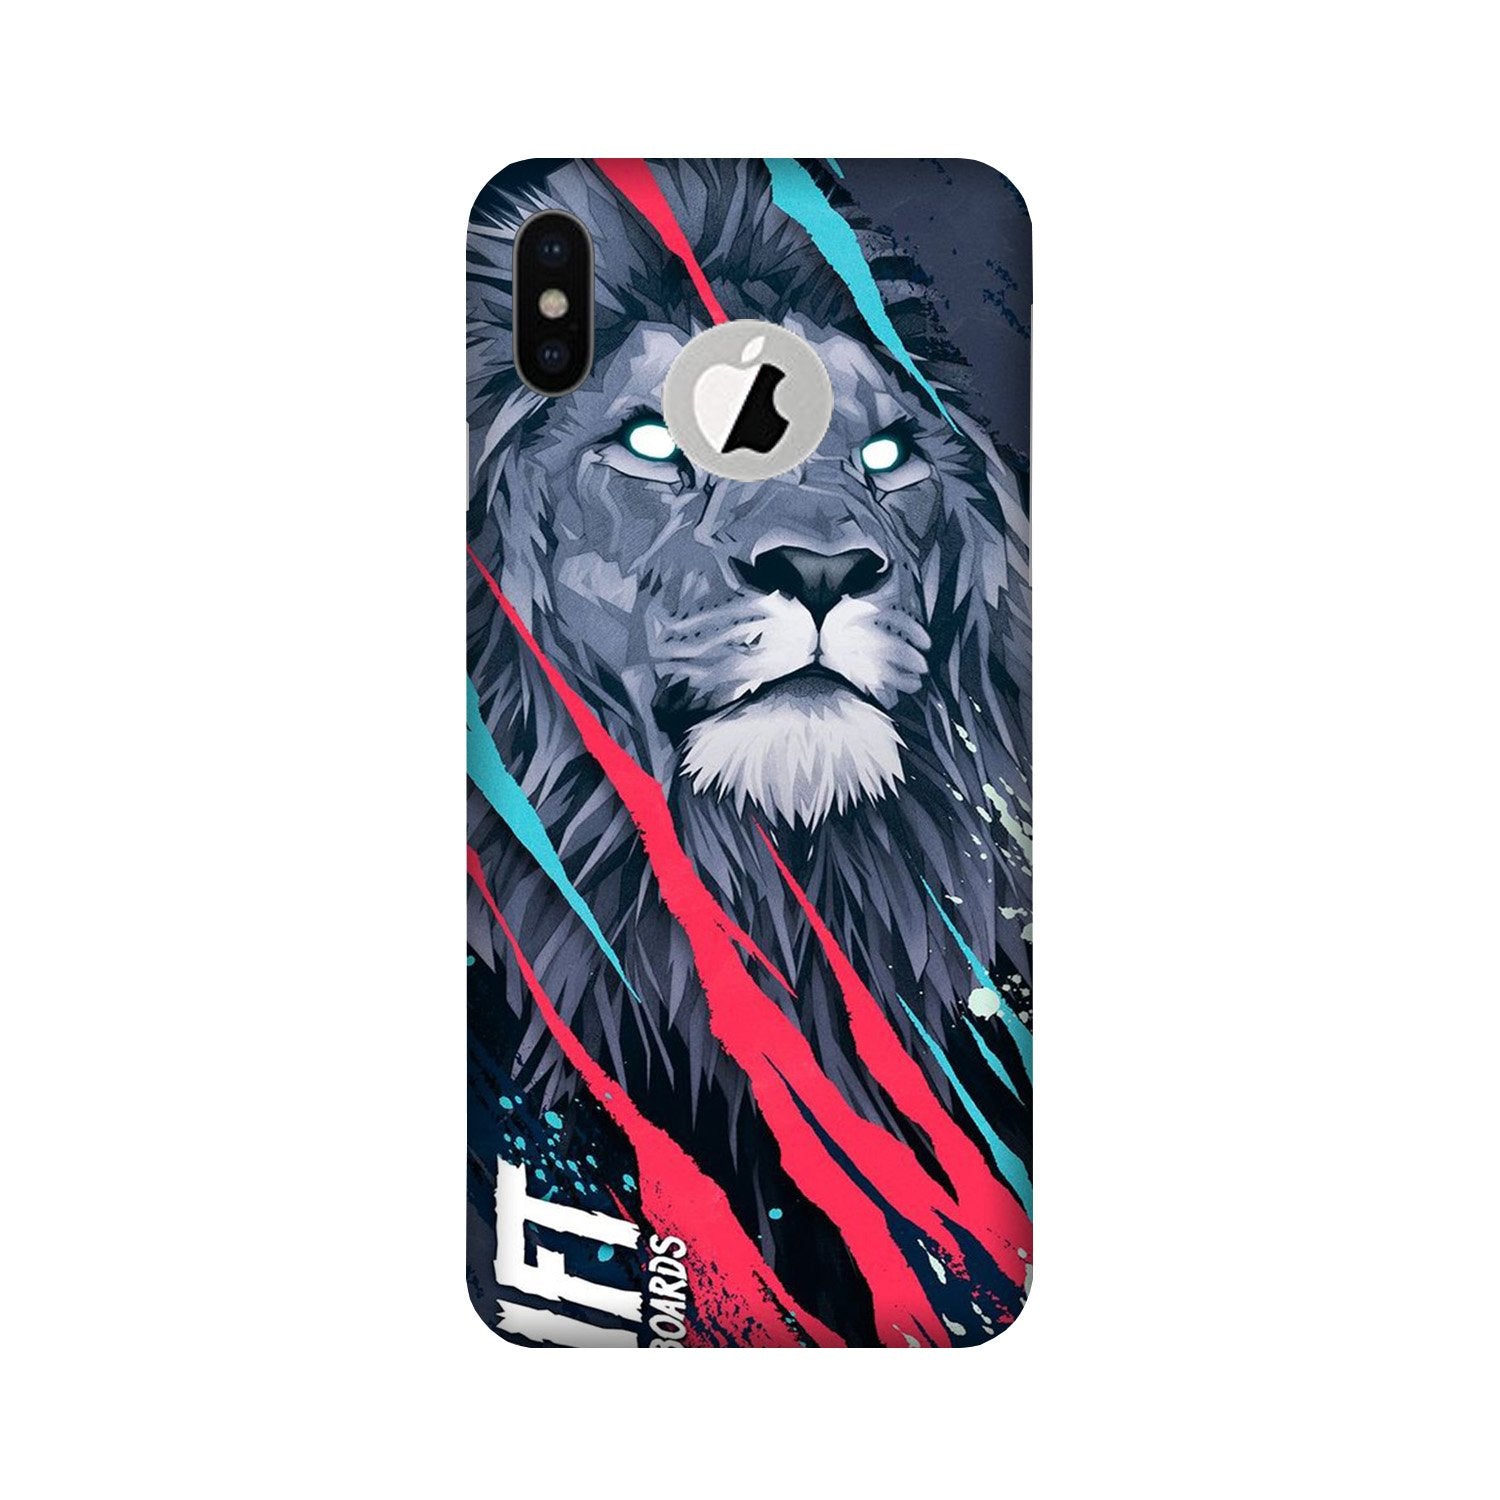 Lion Case for iPhone Xs logo cut(Design No. 278)